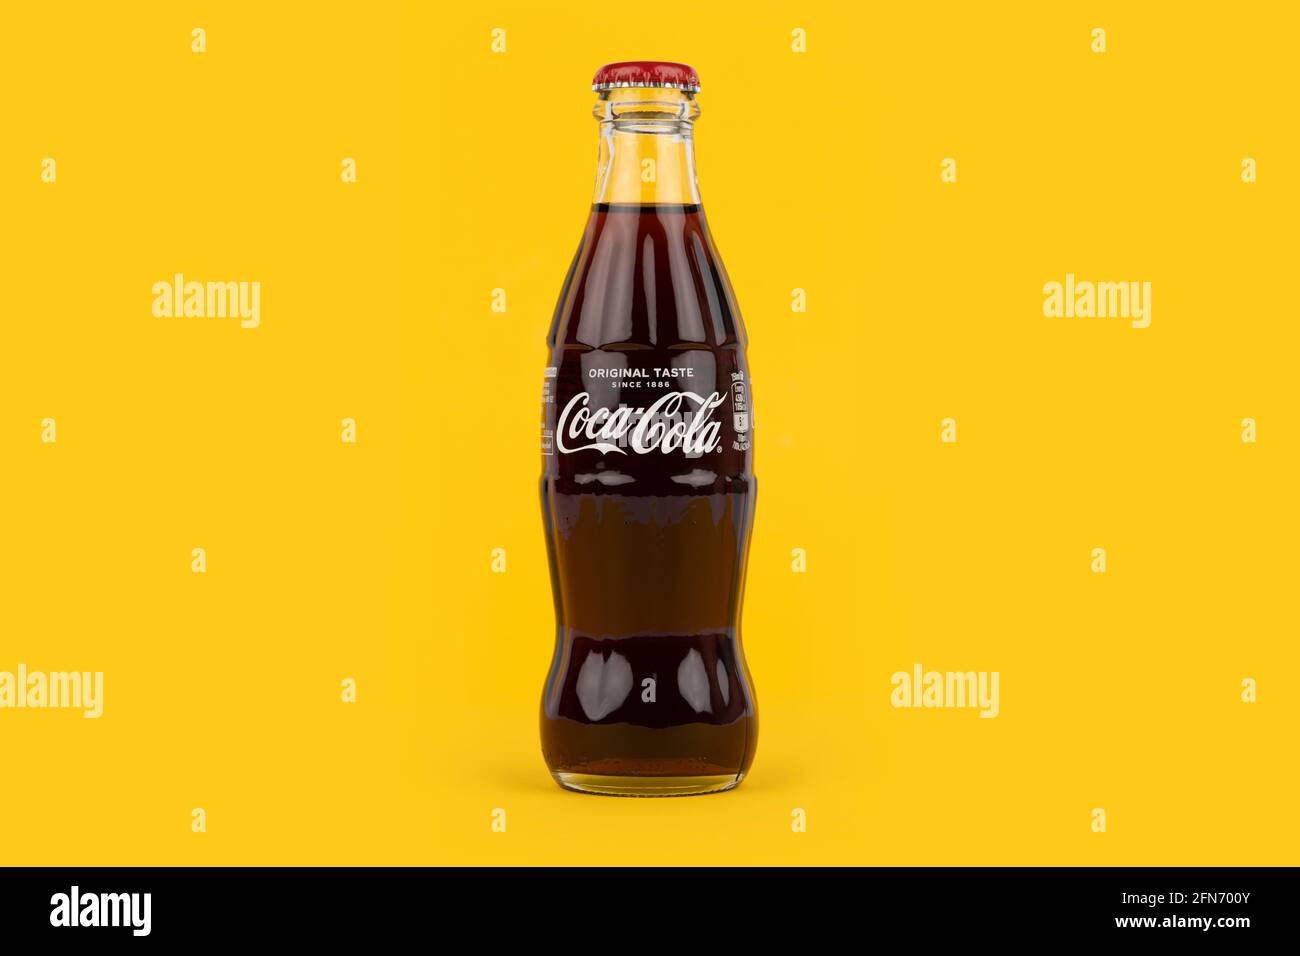 Une bouteille de Coca-Cola de forme traditionnelle sur fond jaune. Banque D'Images